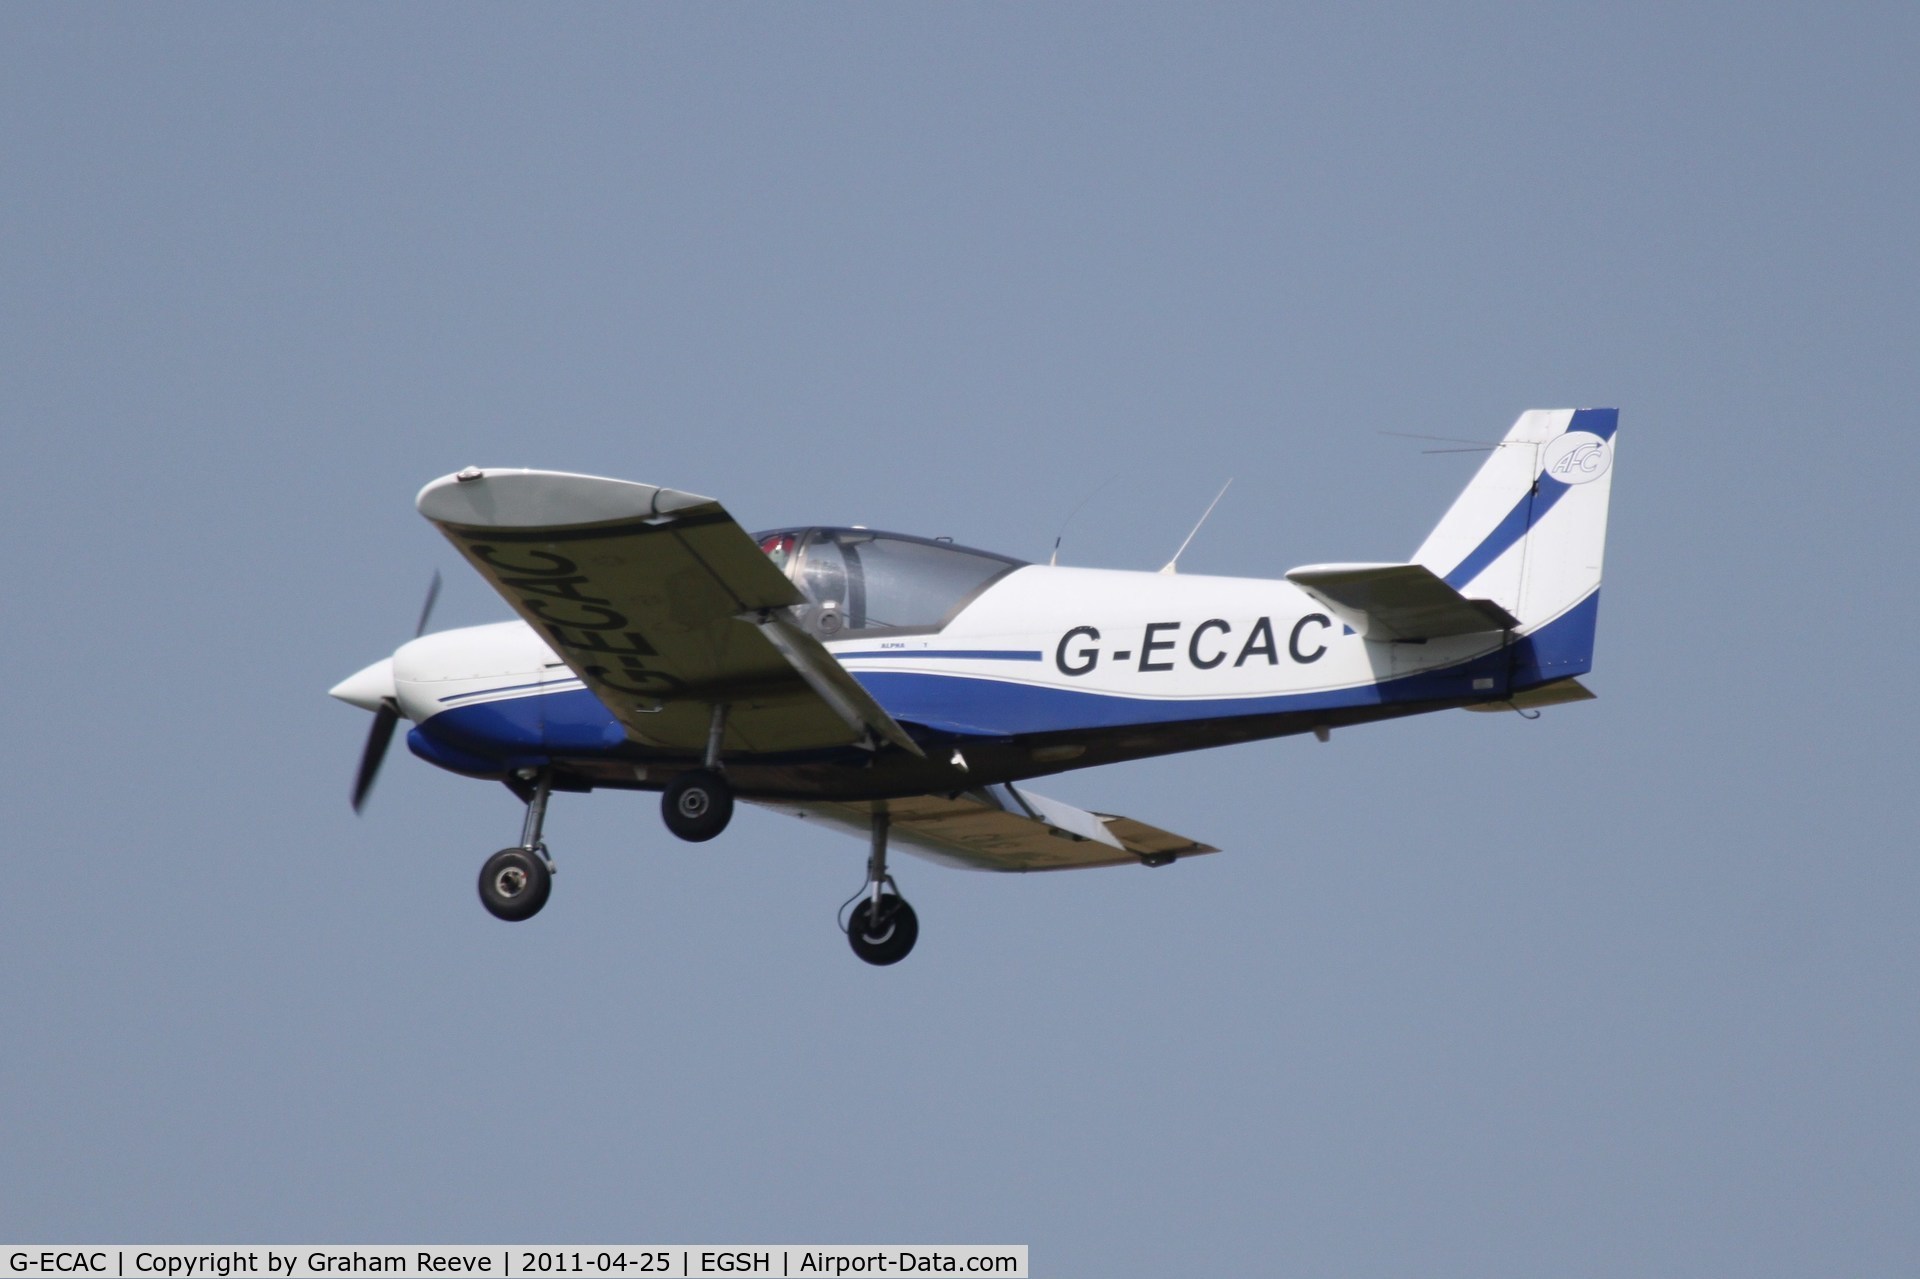 G-ECAC, 2007 Robin R-2120U Alpha C/N 120T-0001, About to land at Norwich.